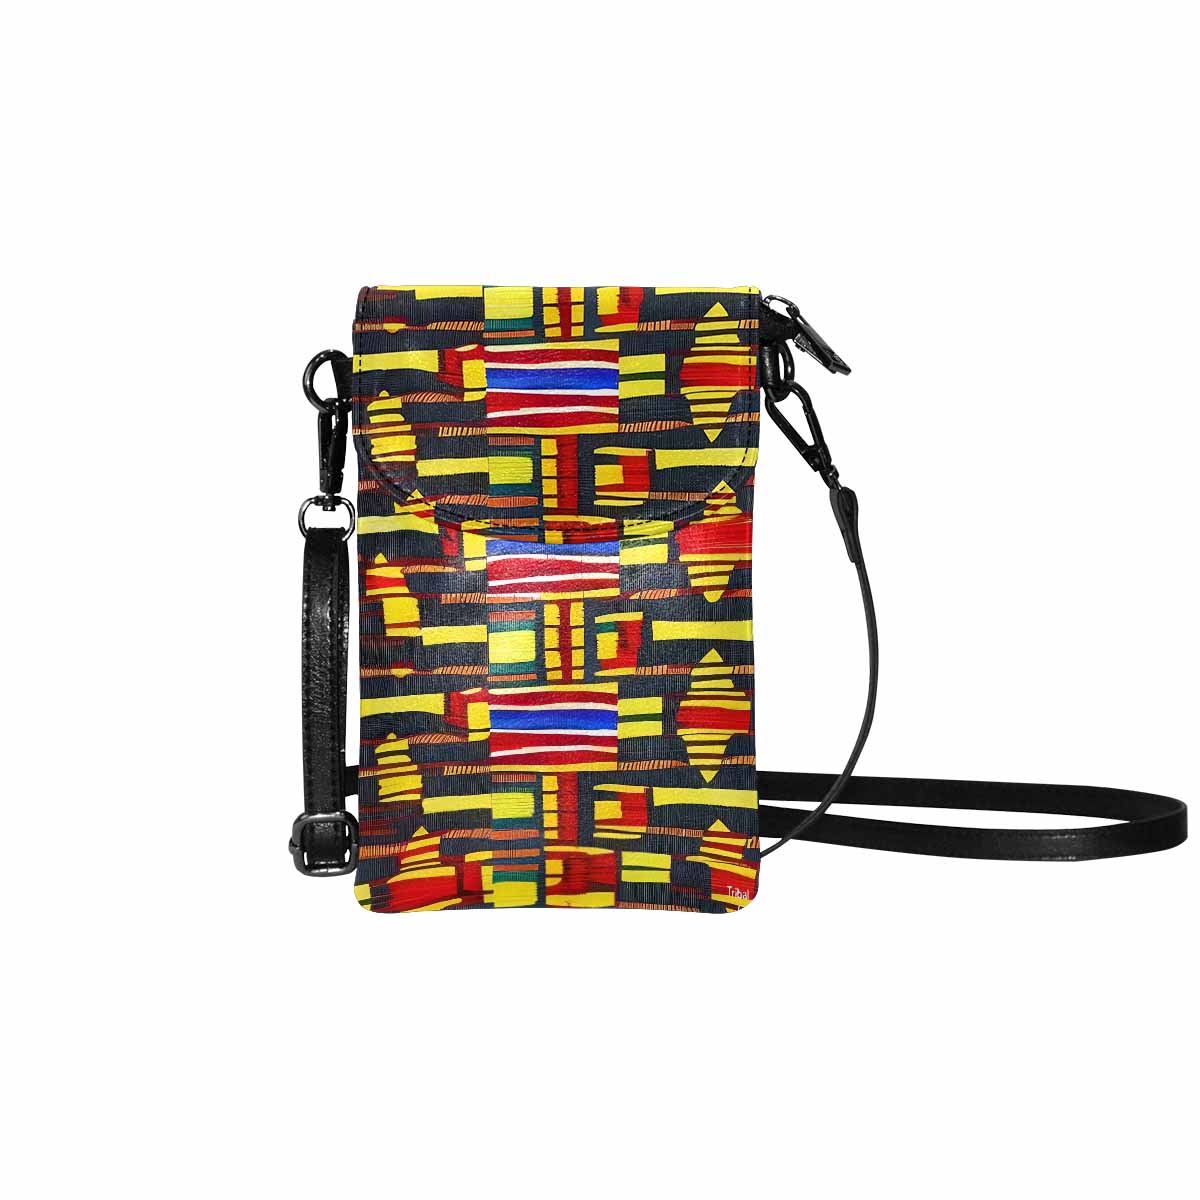 African art, cell phone, keys purse, design 29